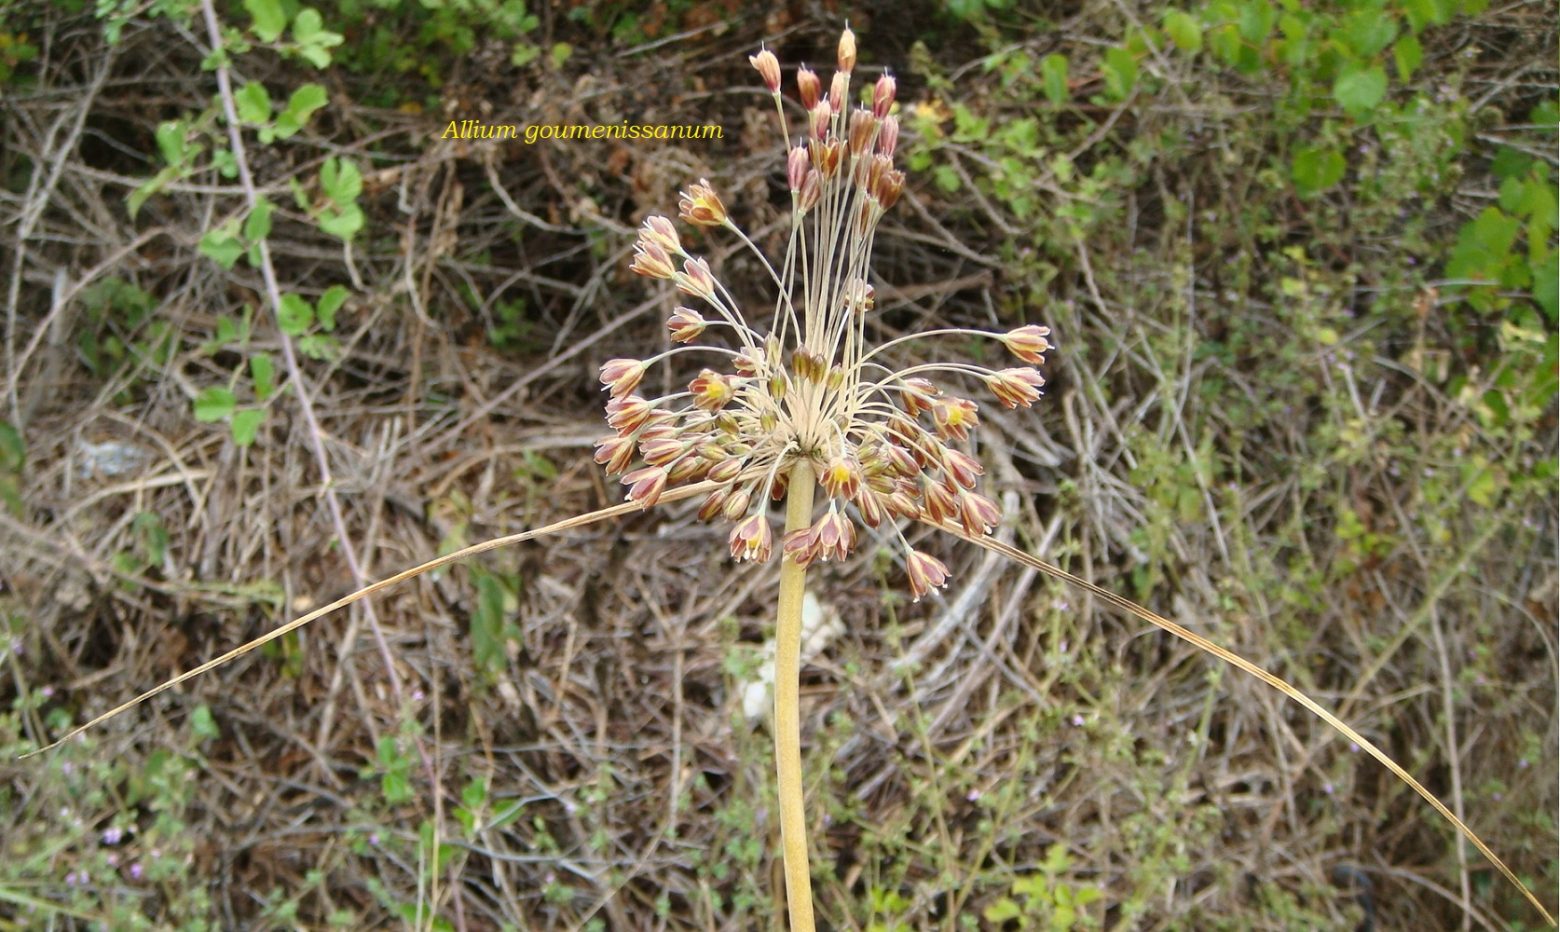 Κιλκίς: Νέο είδος φυτού ανακαλύφθηκε στη Γουμένισσα - Το κρεμμύδι Α.goumenissanum